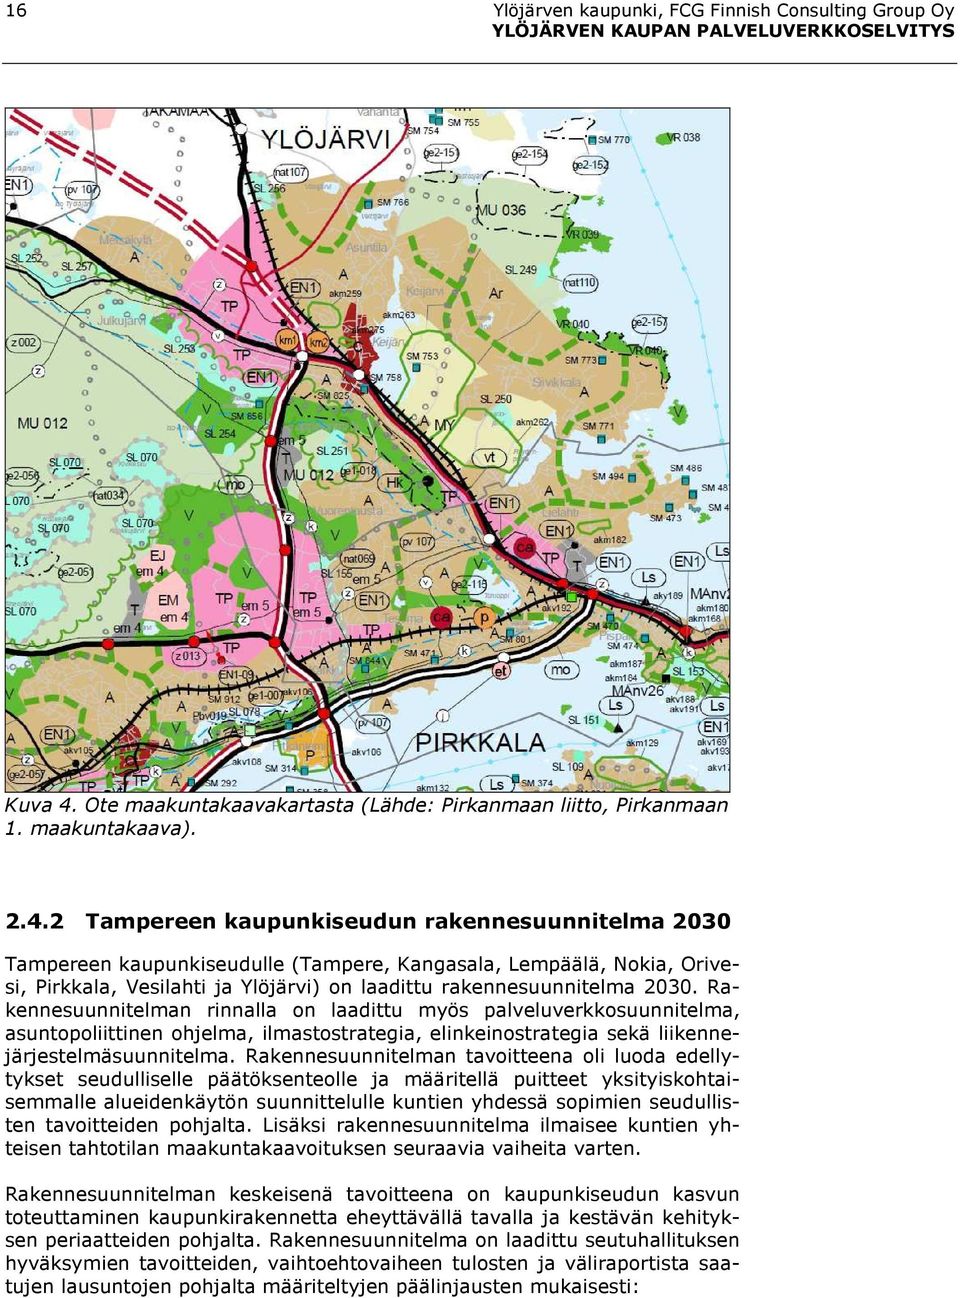 2 Tampereen kaupunkiseudun rakennesuunnitelma 2030 Tampereen kaupunkiseudulle (Tampere, Kangasala, Lempäälä, Nokia, Orivesi, Pirkkala, Vesilahti ja Ylöjärvi) on laadittu rakennesuunnitelma 2030.